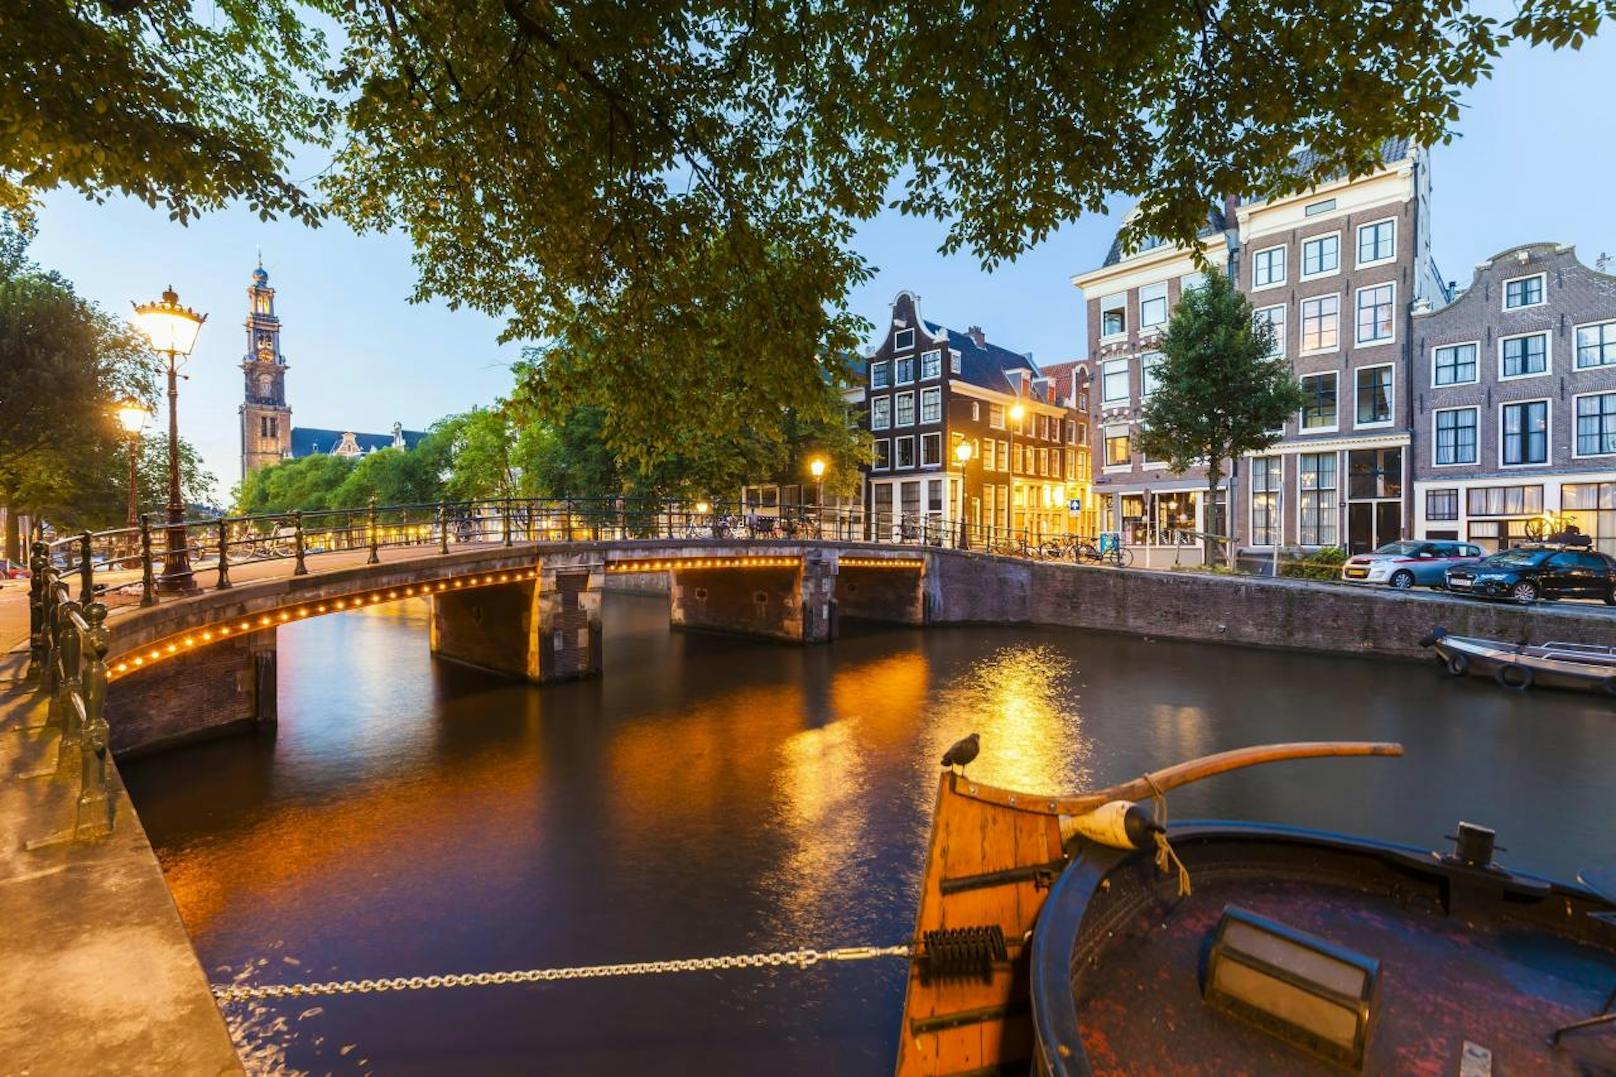 <b>Amsterdam</b> - die Stadt der Grachten, Fahrräder und Coffeeshops ist für einen Kurzurlaub im Herbst ebenfalls zu empfehlen, auch wenn die charmante Hafenstadt zu jeder Zeit einen Besuch wert ist. Besuchen Sie erstklassige Museen, schlendern Sie über die zahlreichen entzückenden Brücken oder lassen Sie sich einfach vom Charme der niederländischen Hauptstadt entzücken.